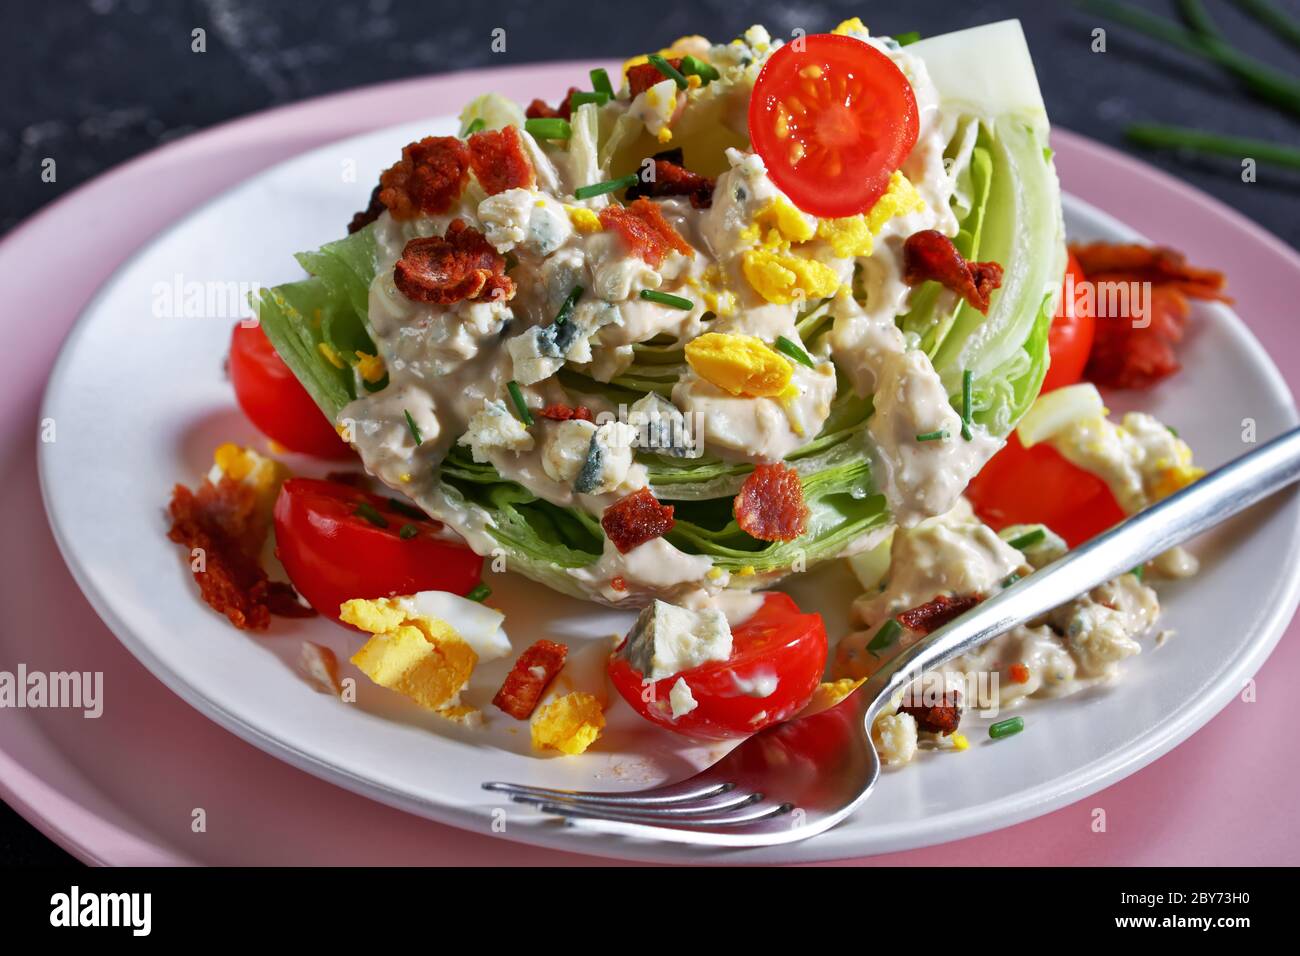 gros plan de la salade iceberg recouverte de sauce au fromage bleu, bacon croustillant, tomates cerises, œufs durs émiettés, ciboulette sur les assiettes Banque D'Images